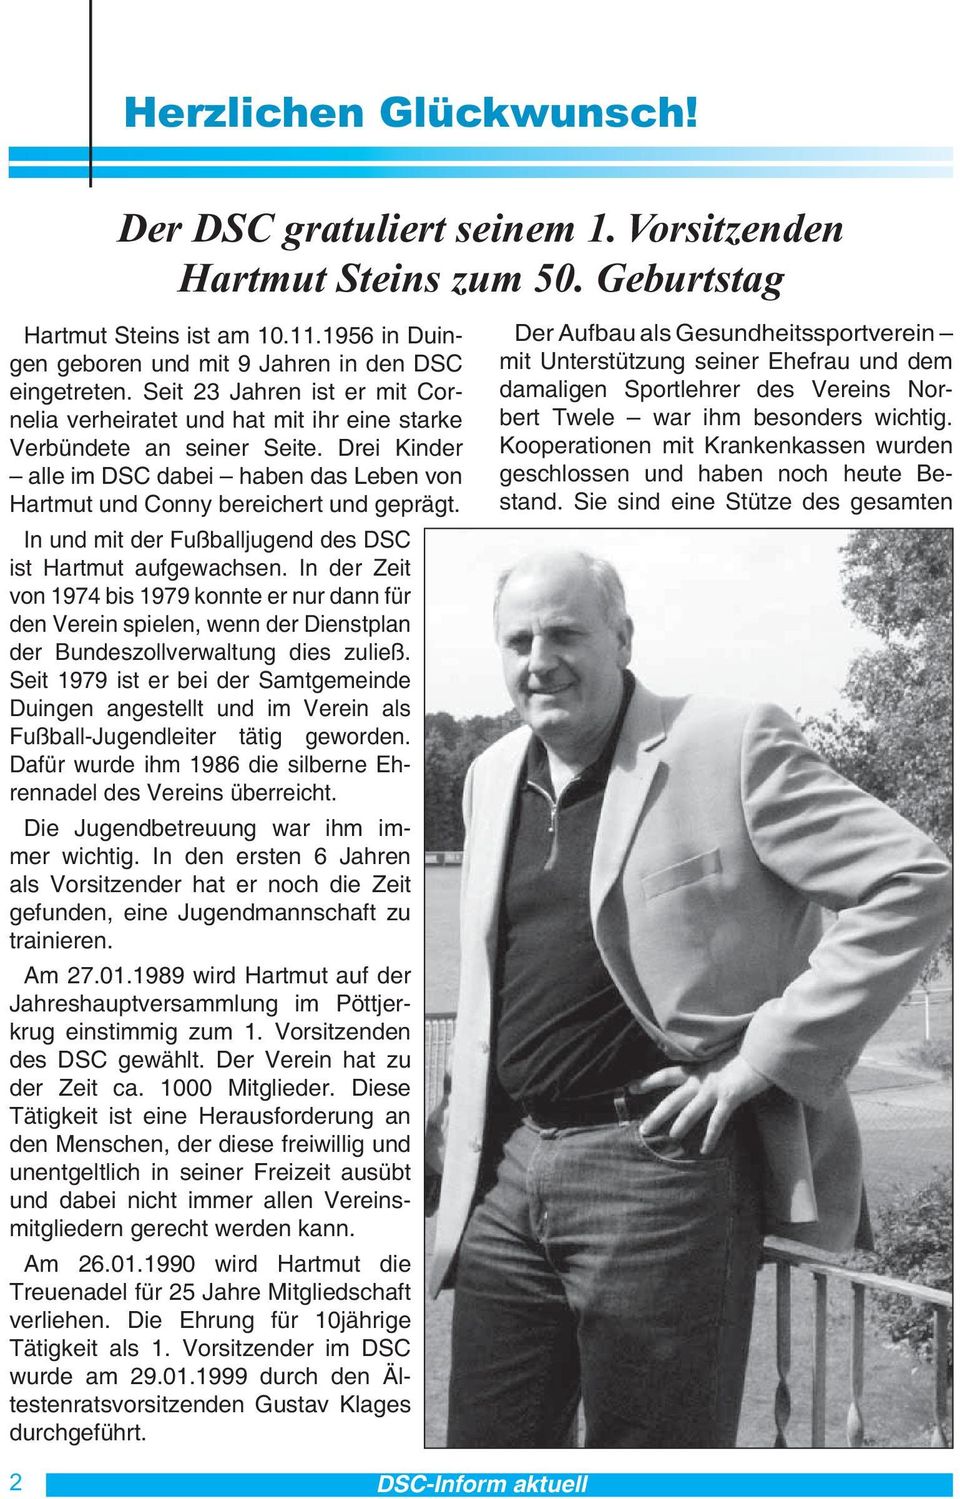 In und mit der Fußballjugend des DSC ist Hartmut aufgewachsen. In der Zeit von 1974 bis 1979 konnte er nur dann für den Verein spielen, wenn der Dienstplan der Bundeszollverwaltung dies zuließ.